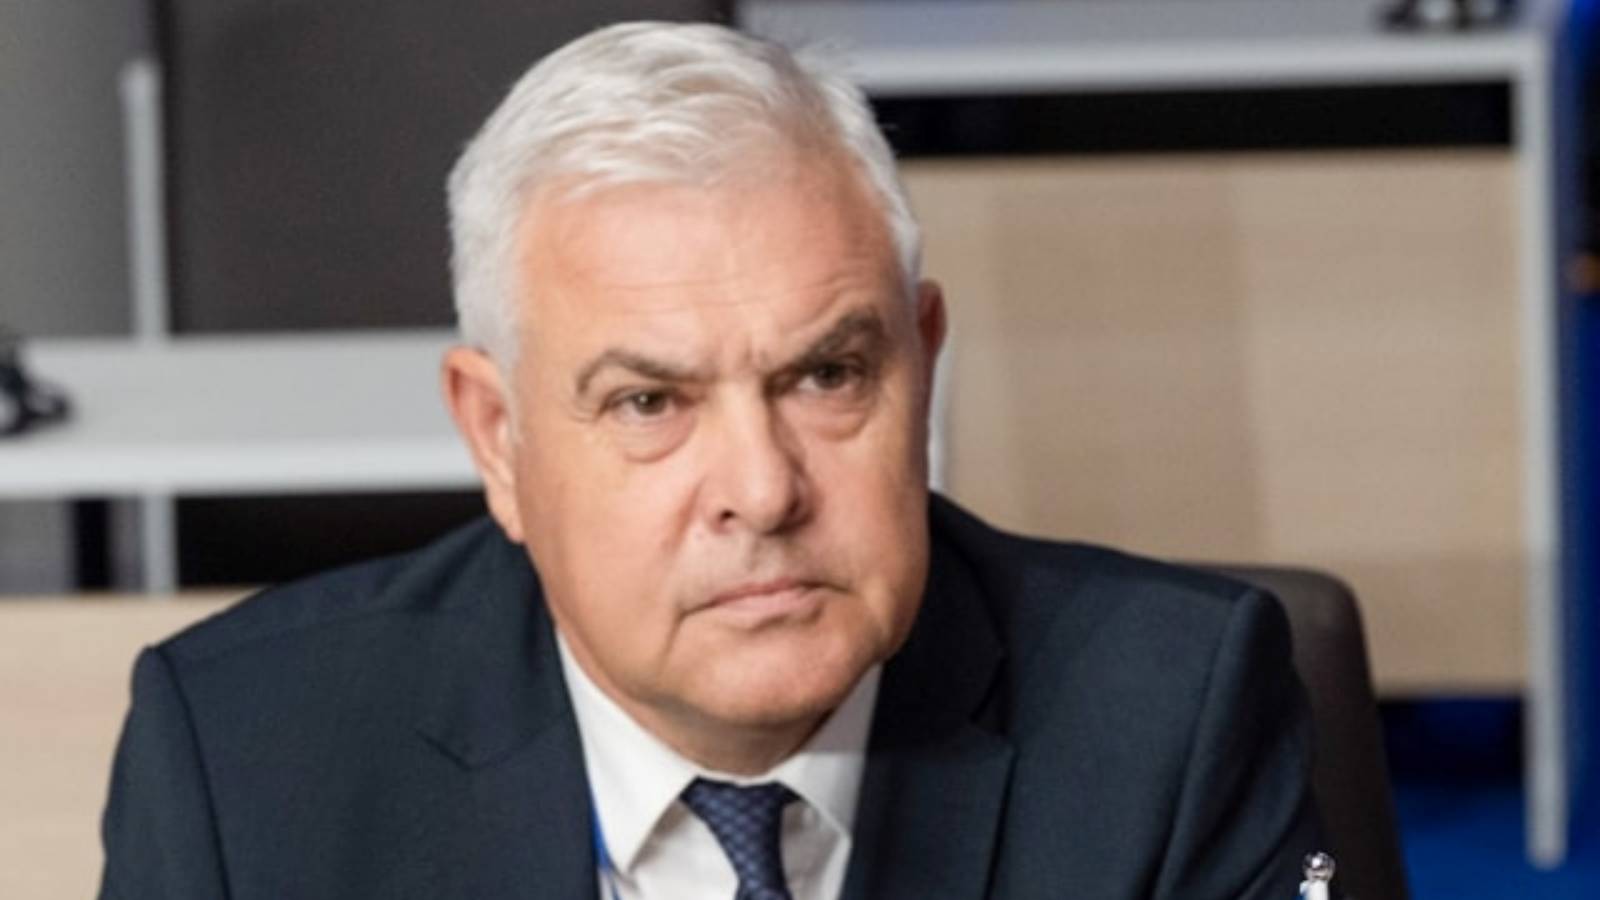 Minister Obrony Dwa oficjalne komunikaty LAST MINUTE ważne dla całej Rumunii